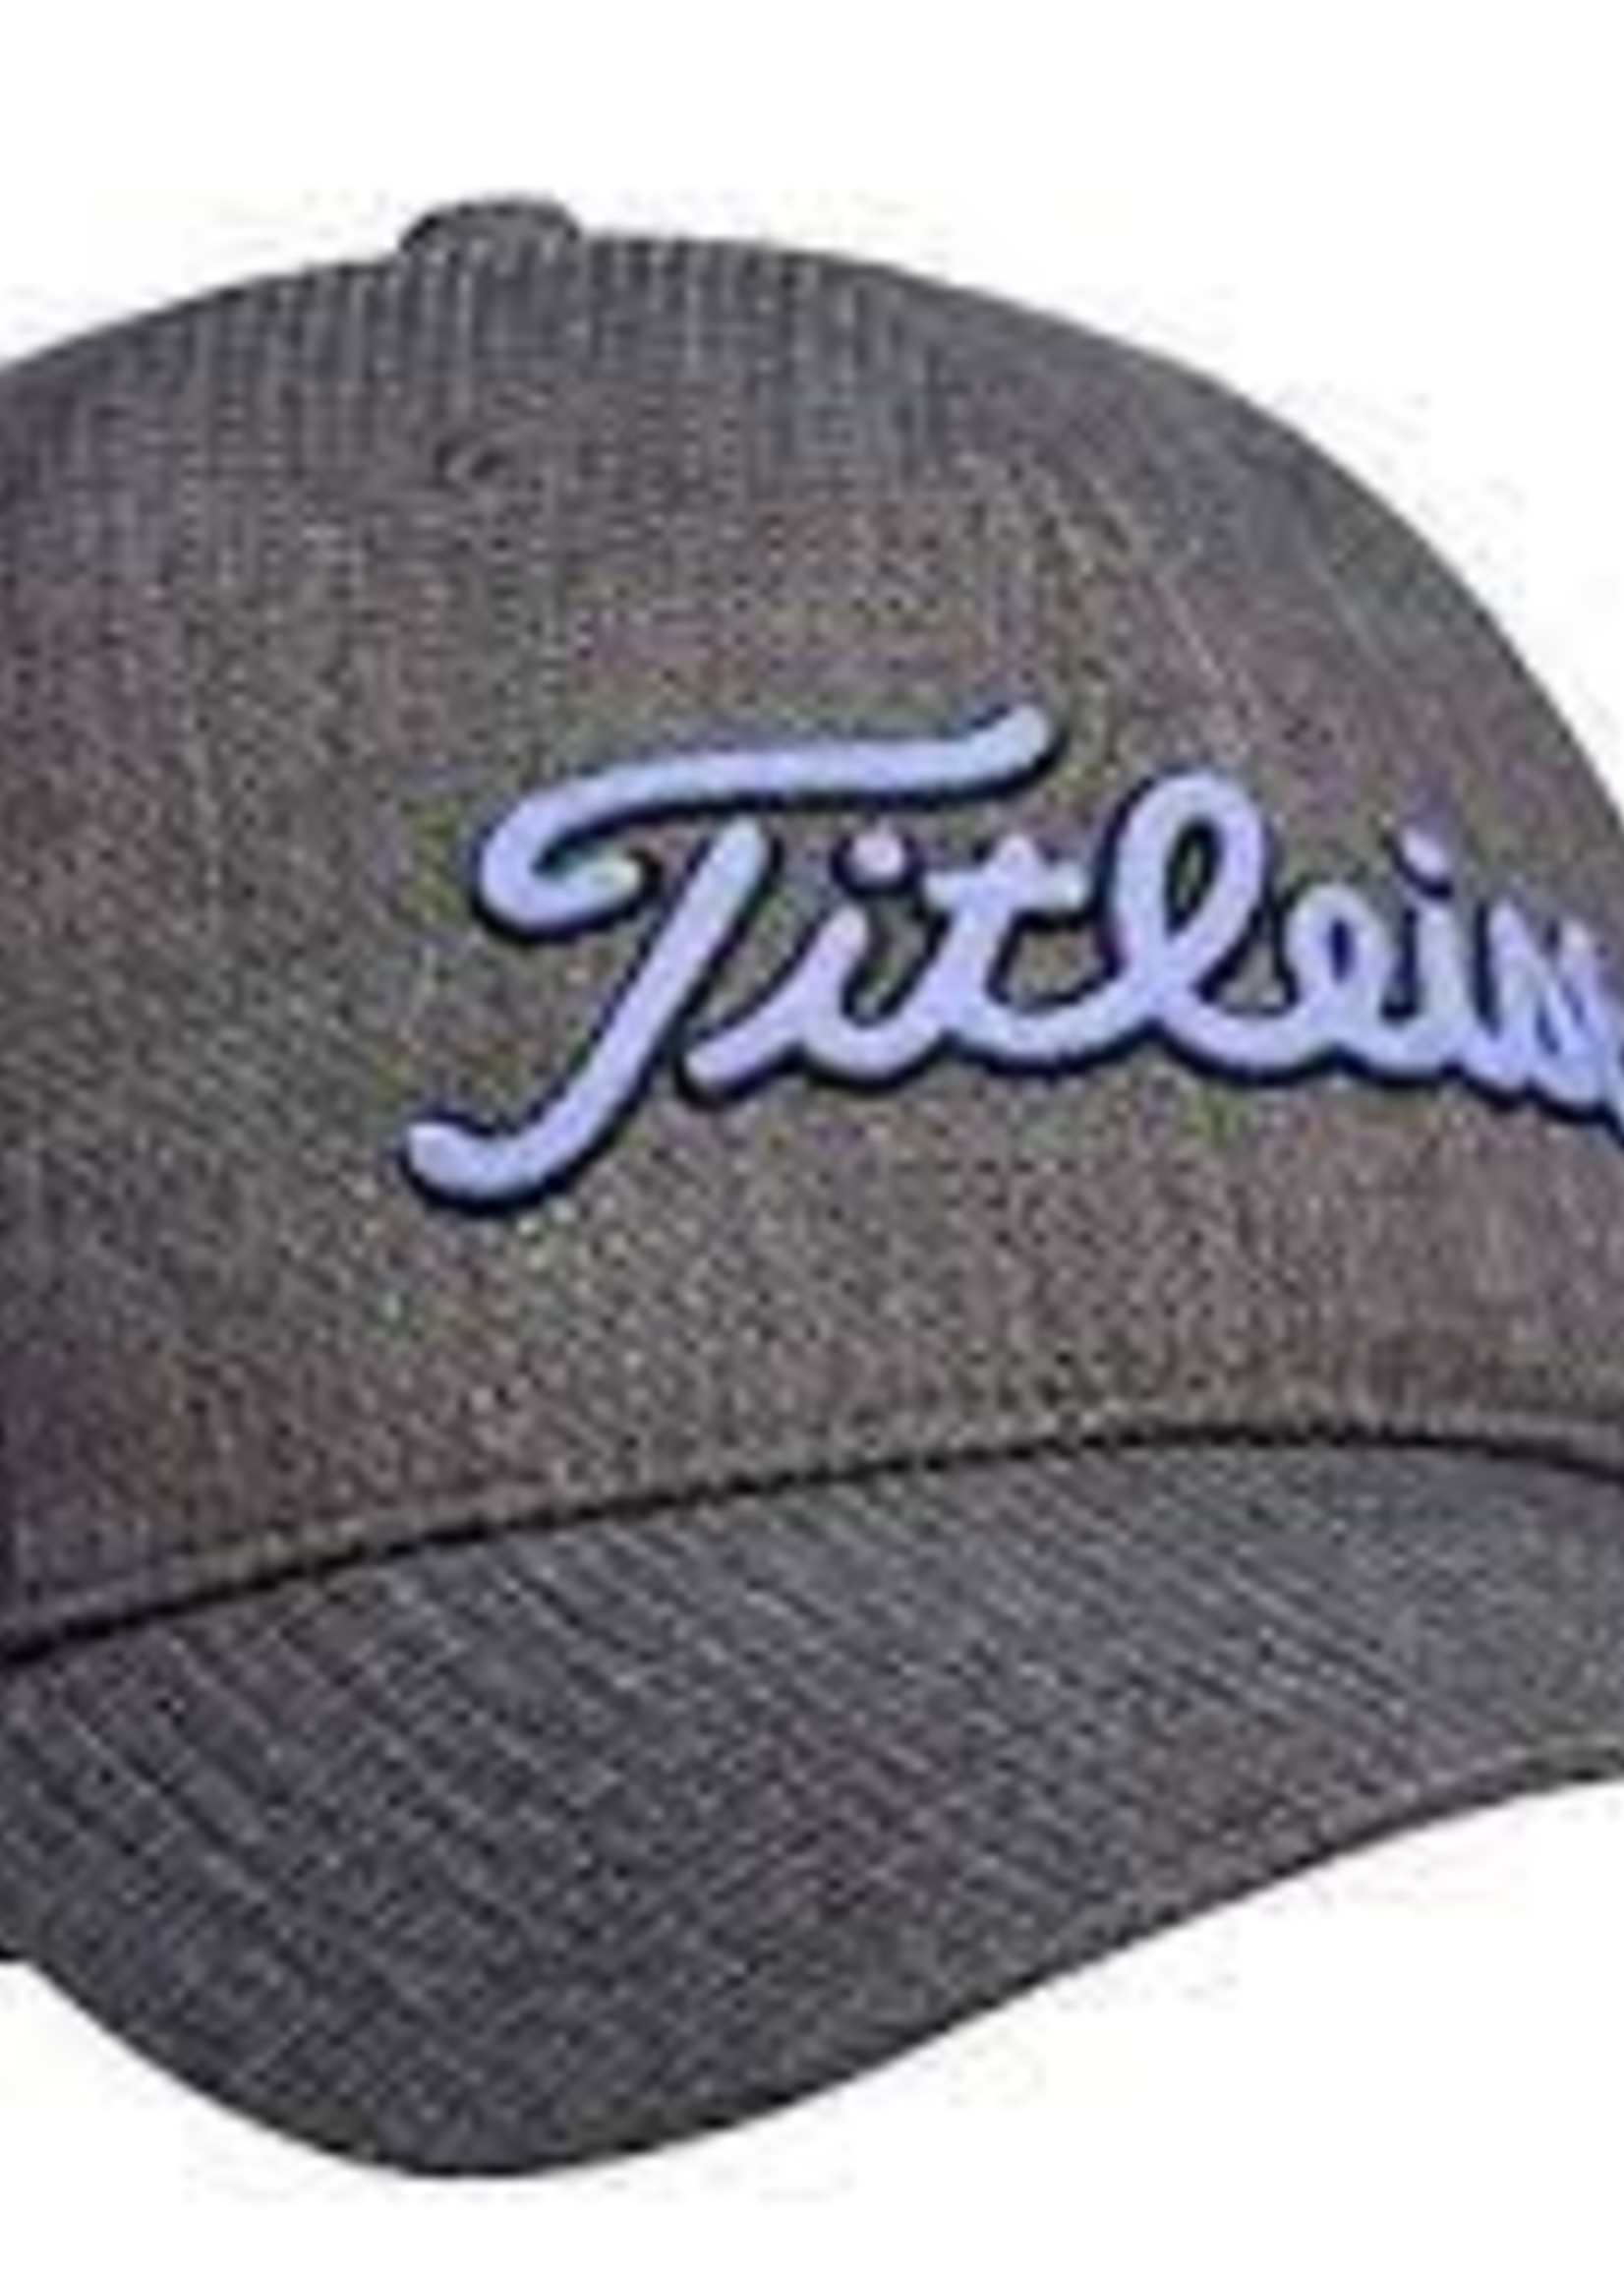 Titleist Women's Titleist Breezer Hat